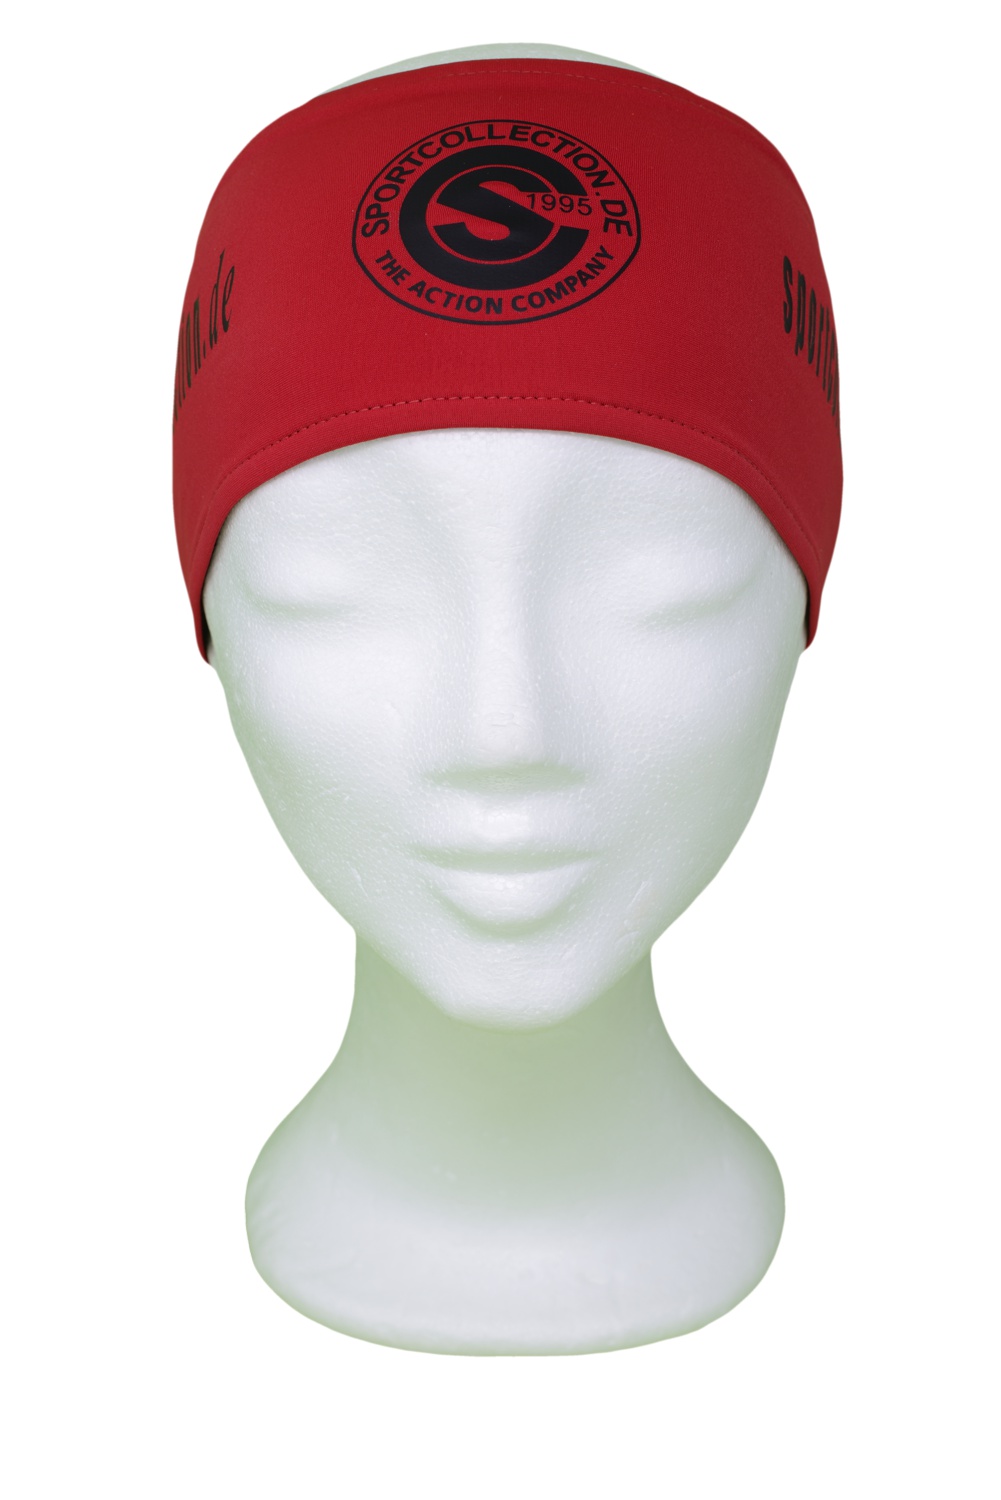 Stöhr Stirnband Rot-Schwarz-Logo-Text